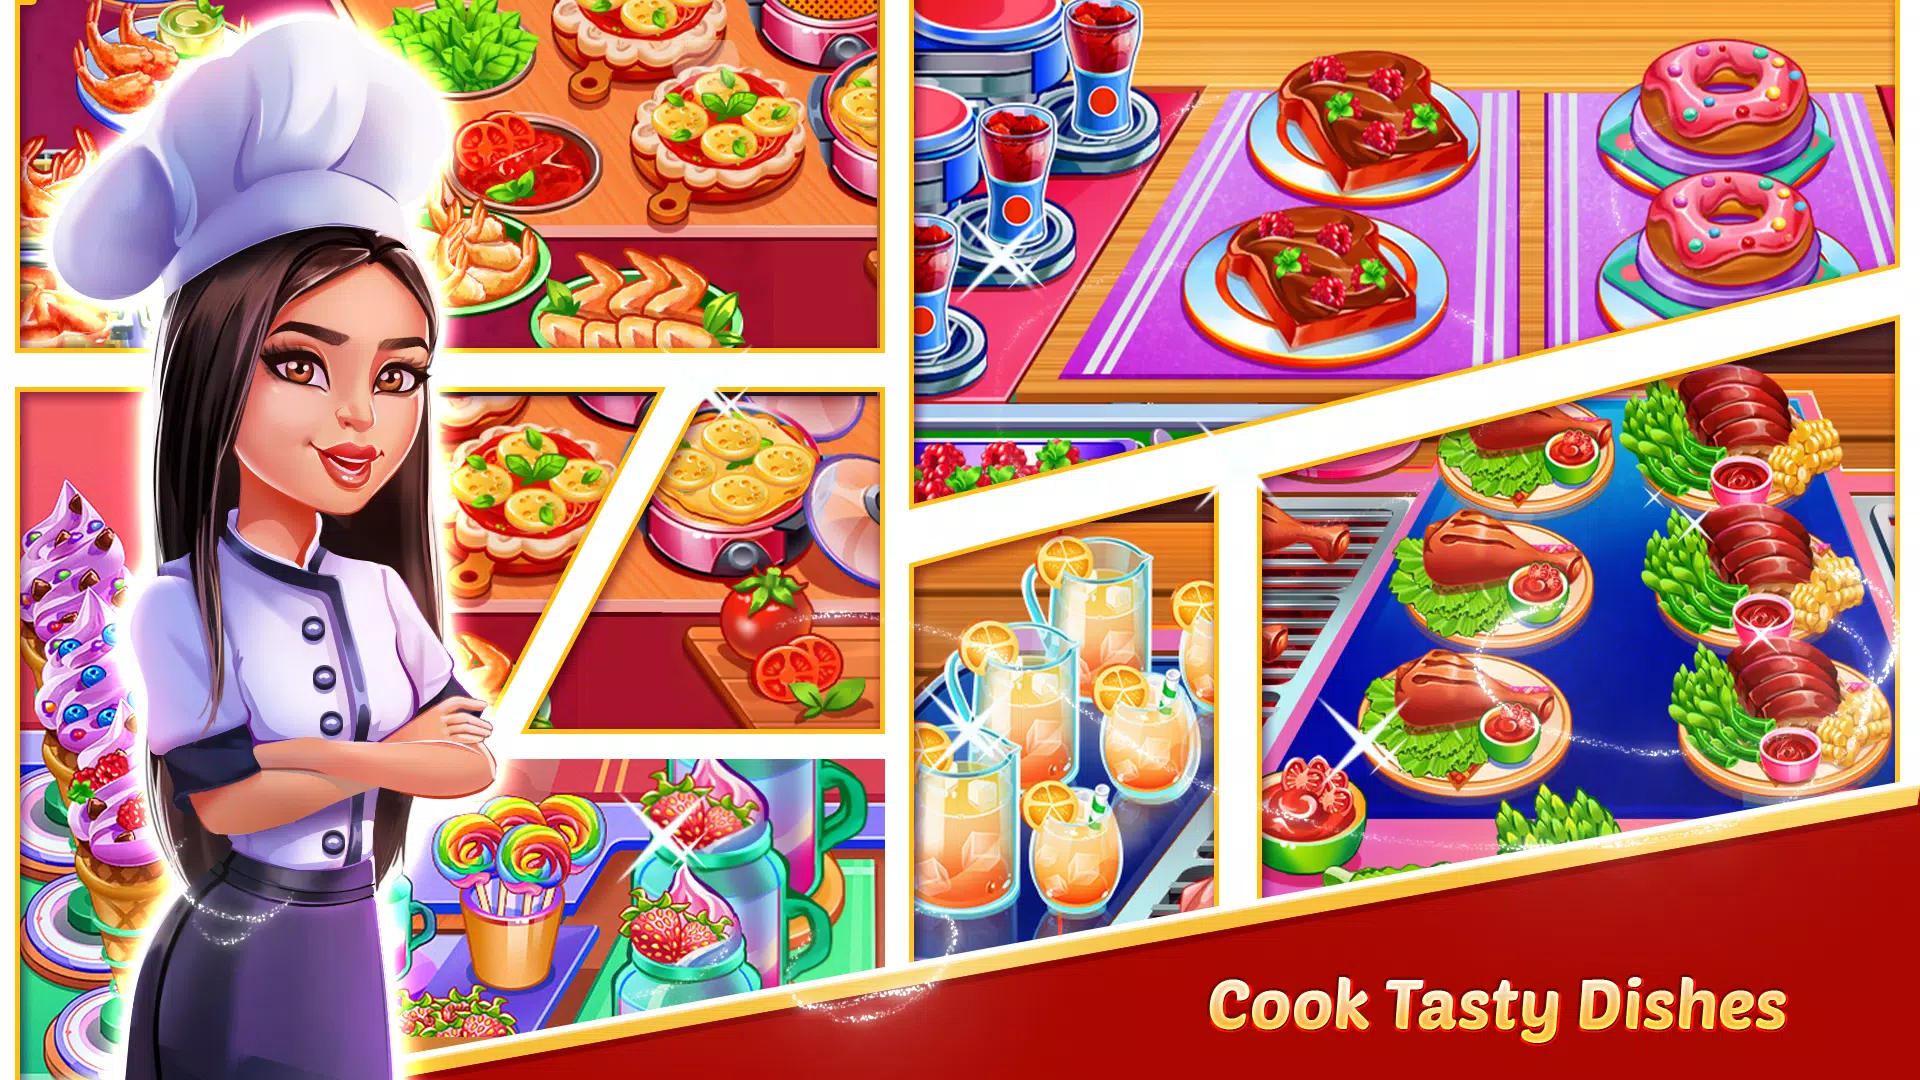 Giochi di cucina americana - Ristorante chef for Android - APK Download